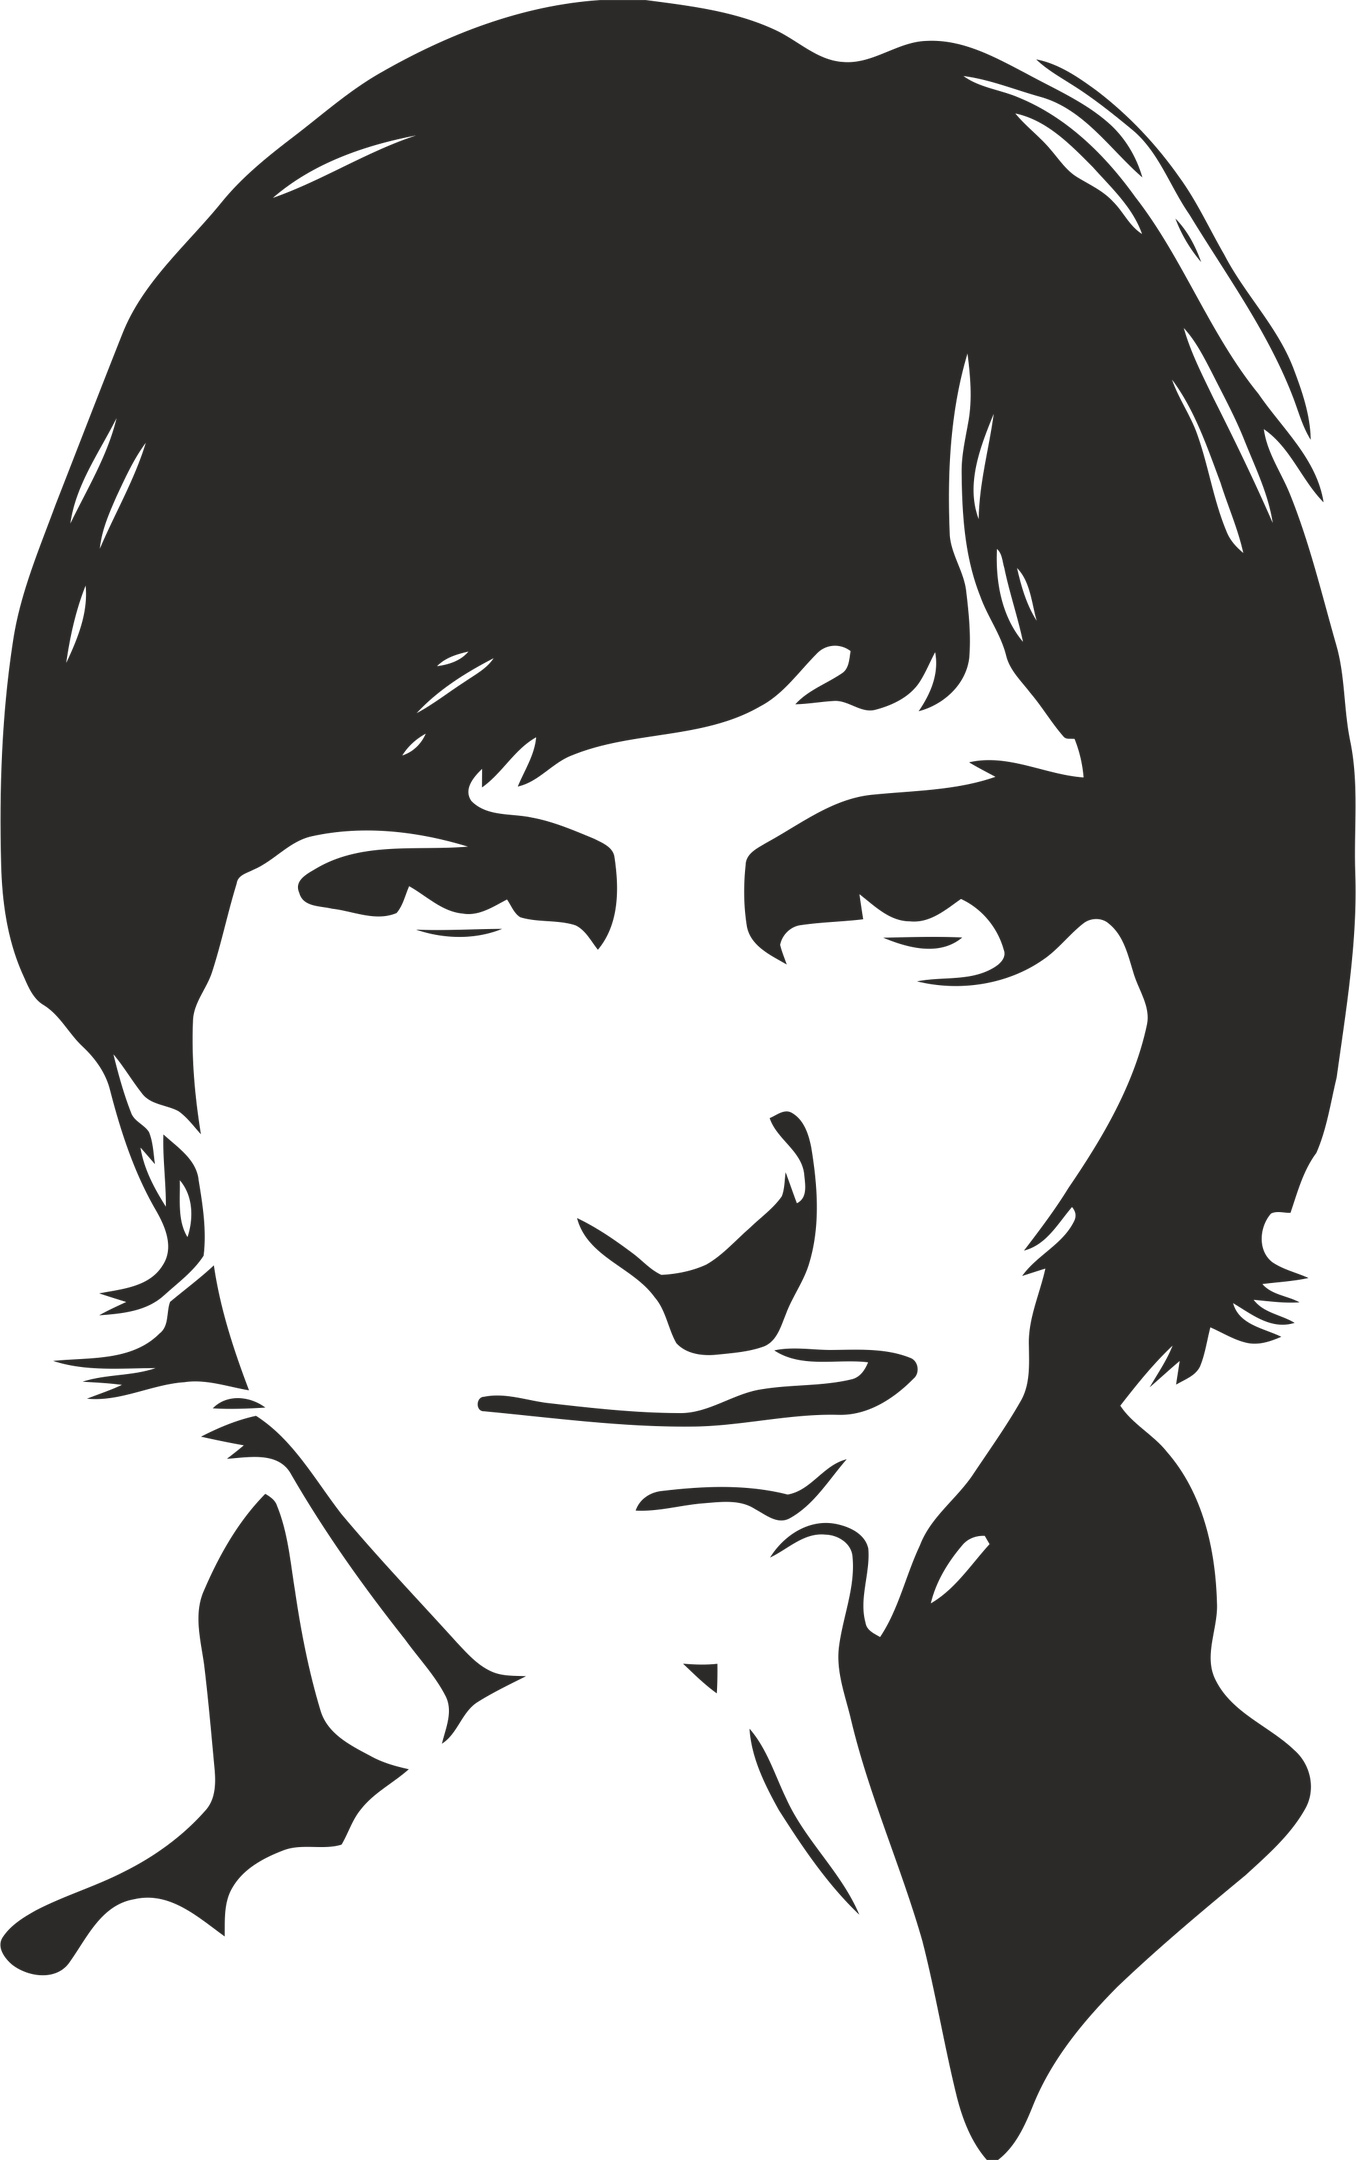 Steve Jobs Stencil Free CDR Vectors Art